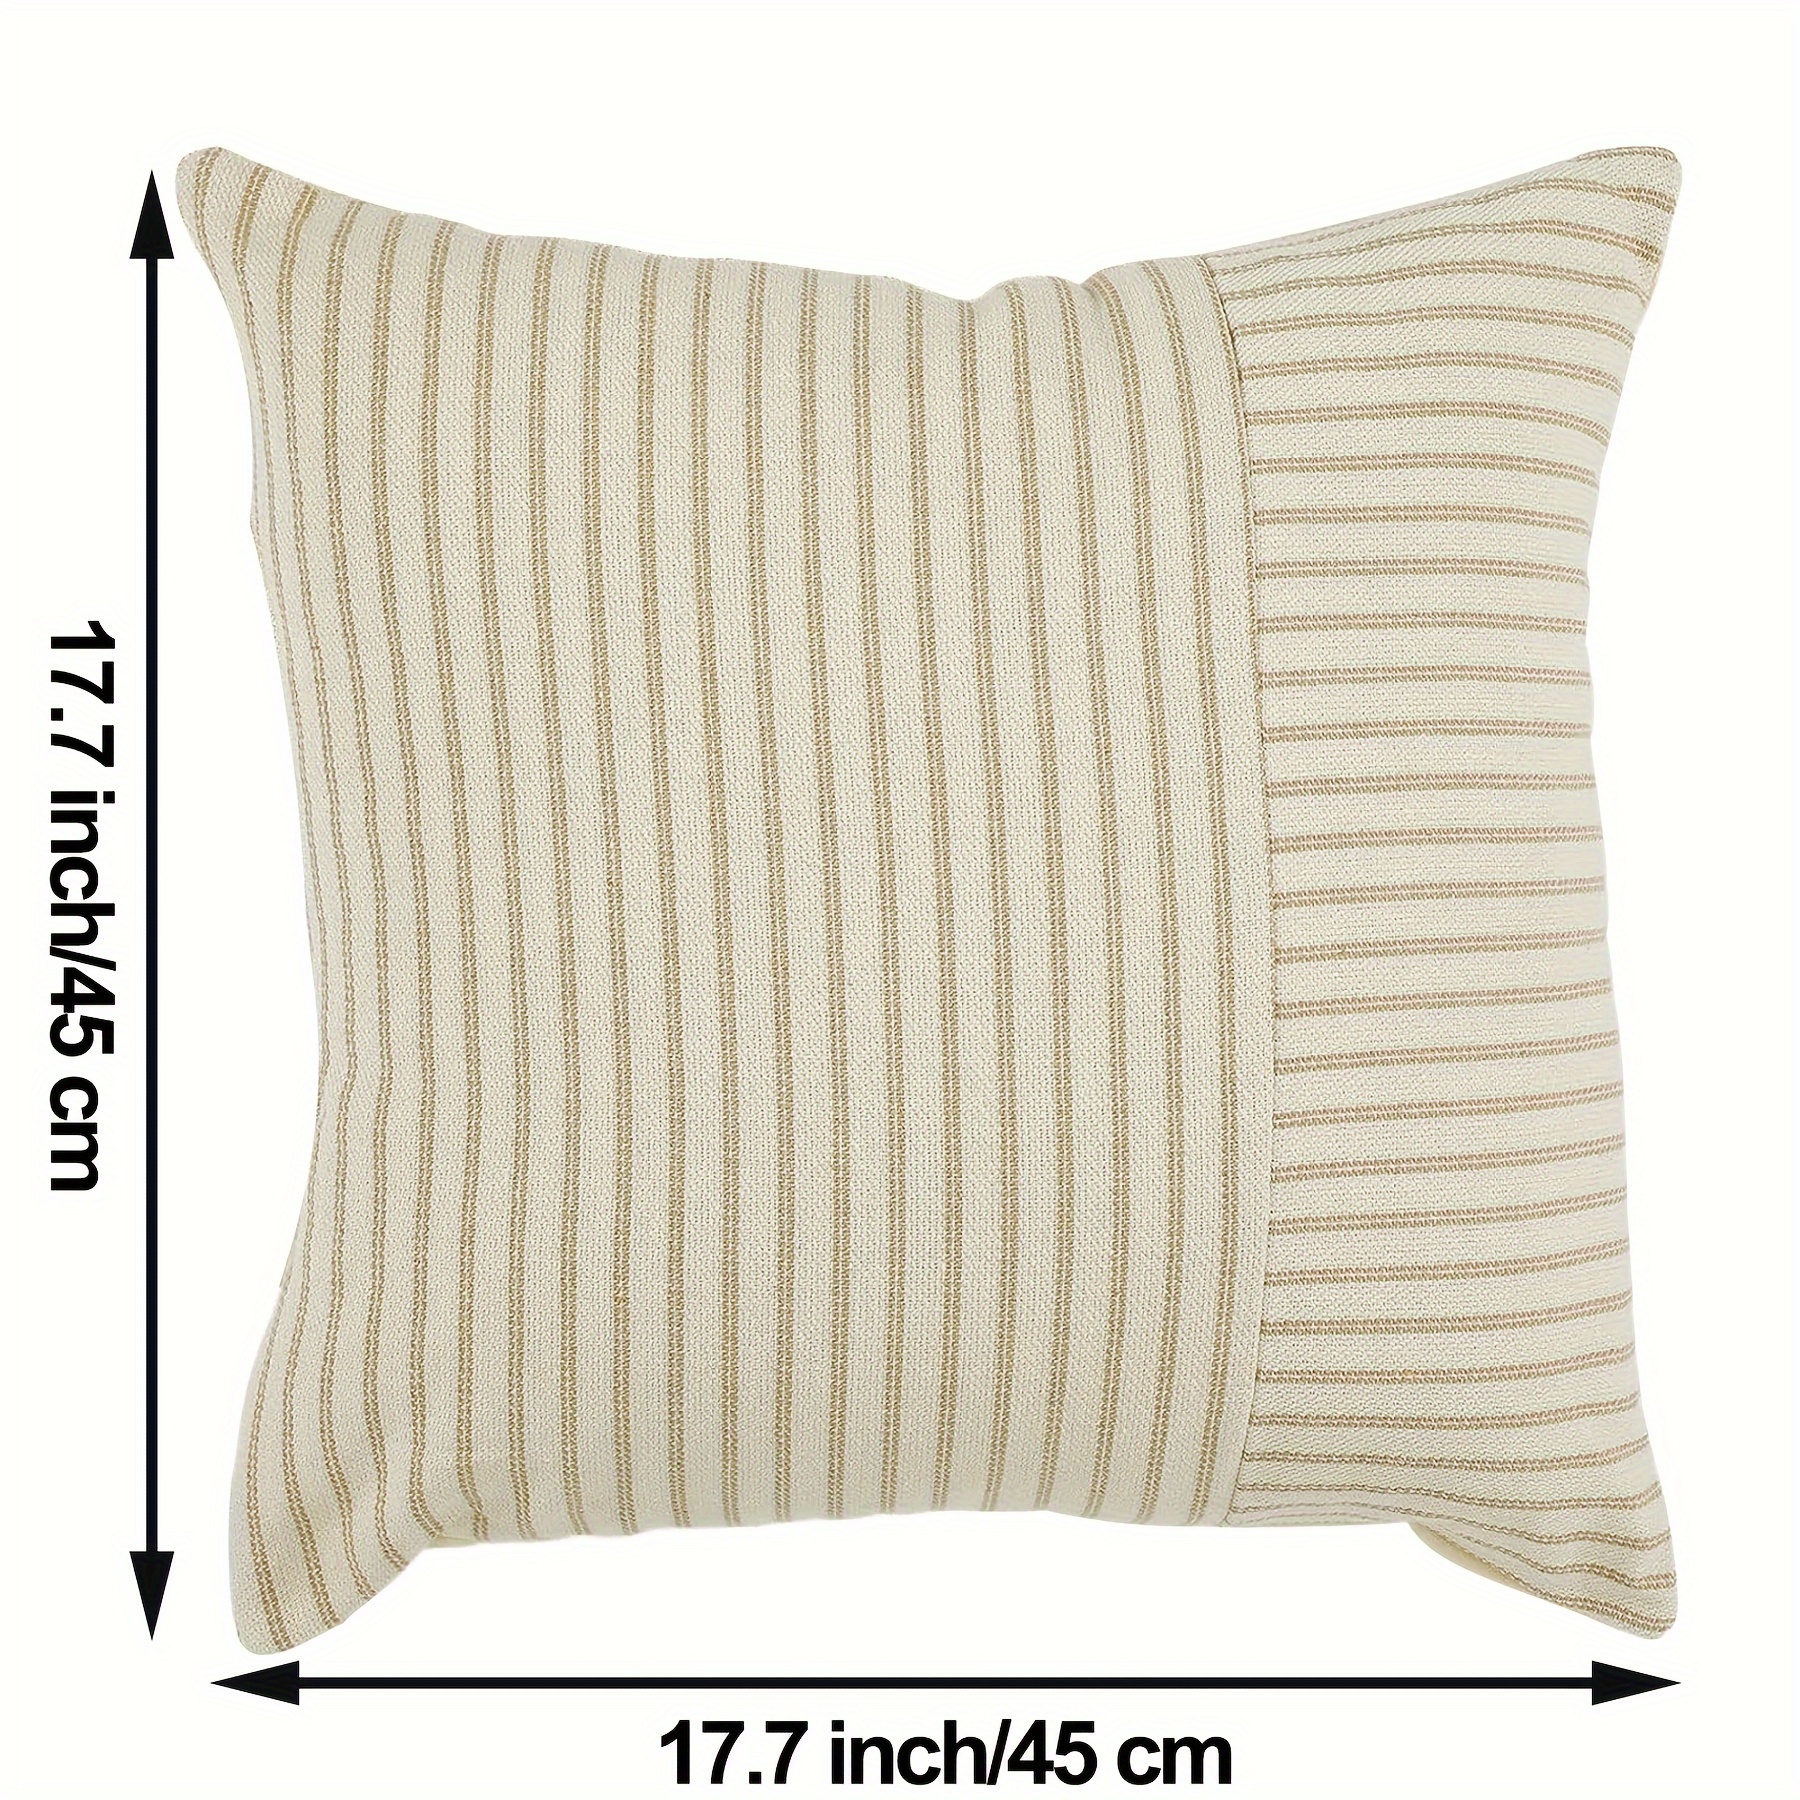 Indoor/Outdoor Square Pillow Insert 18 x 18